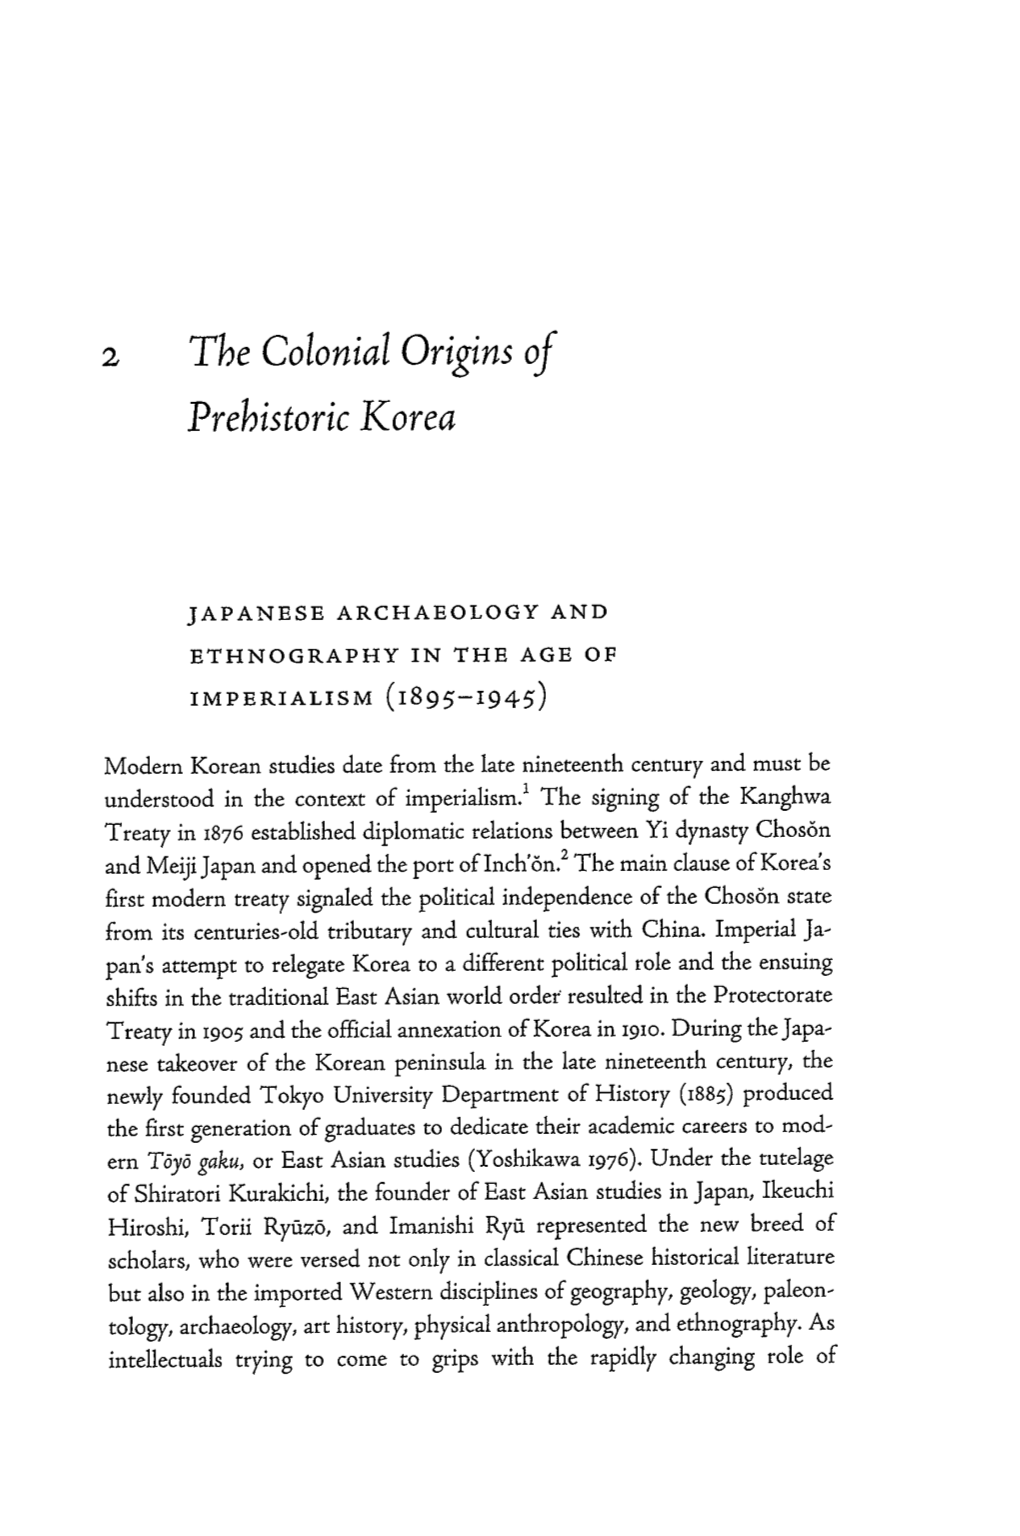 The Colonial Origins of Prehistoric Korea